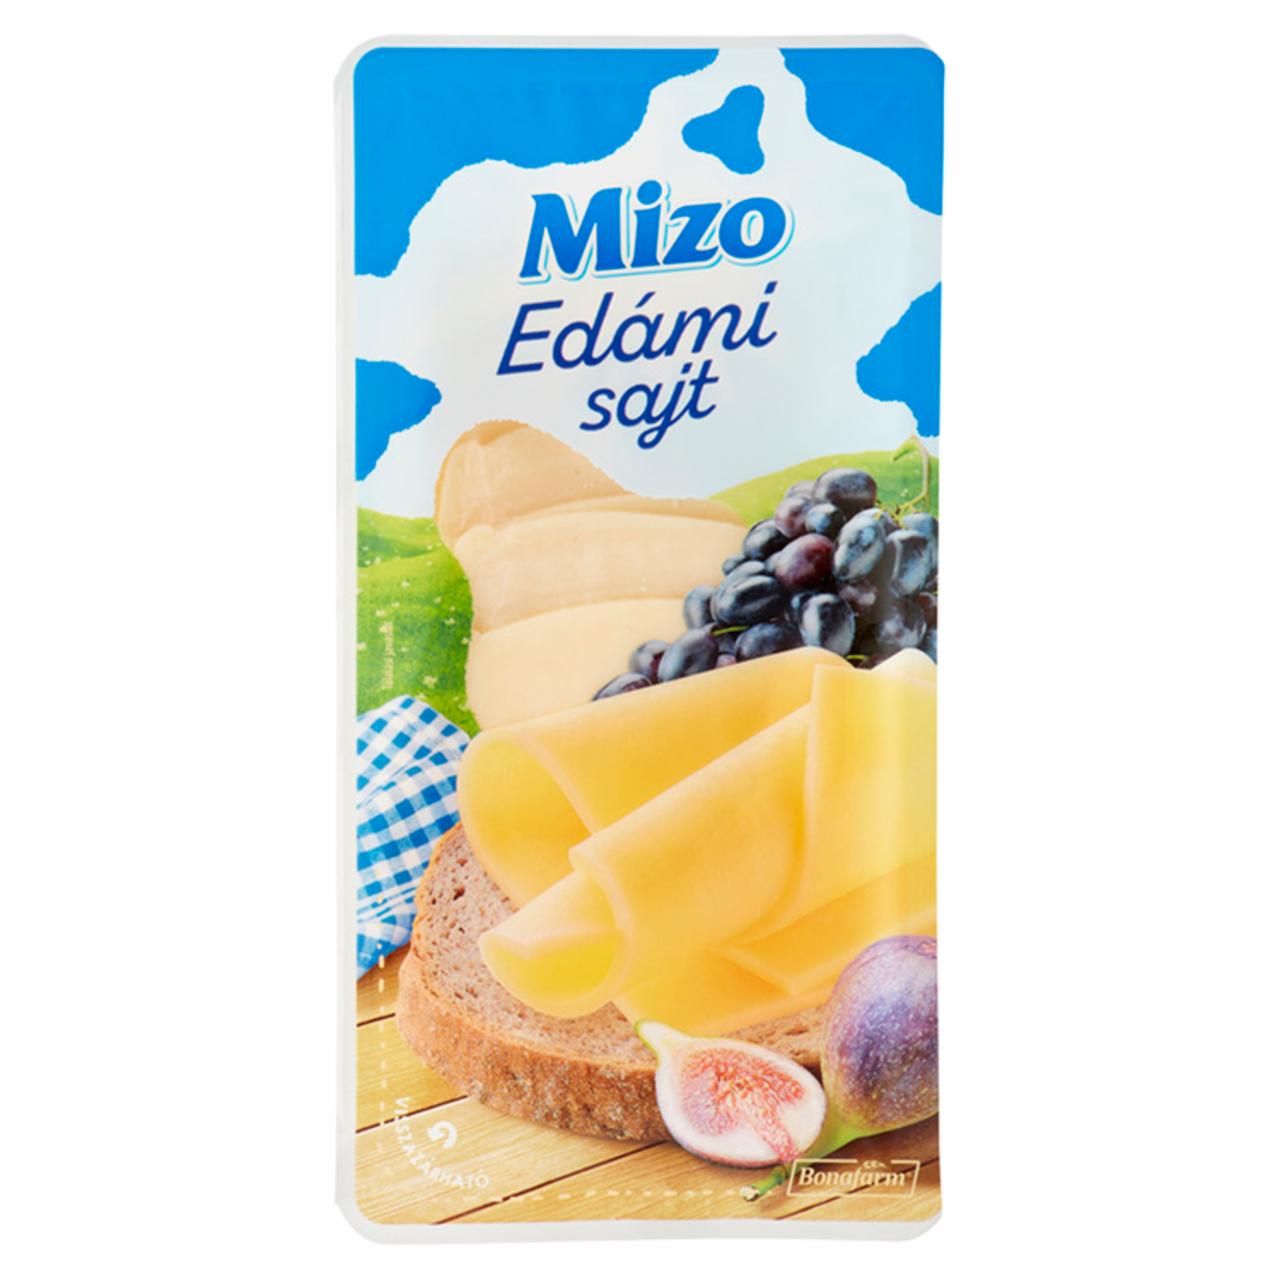 Képek - Mizo szeletelt edámi sajt 100 g